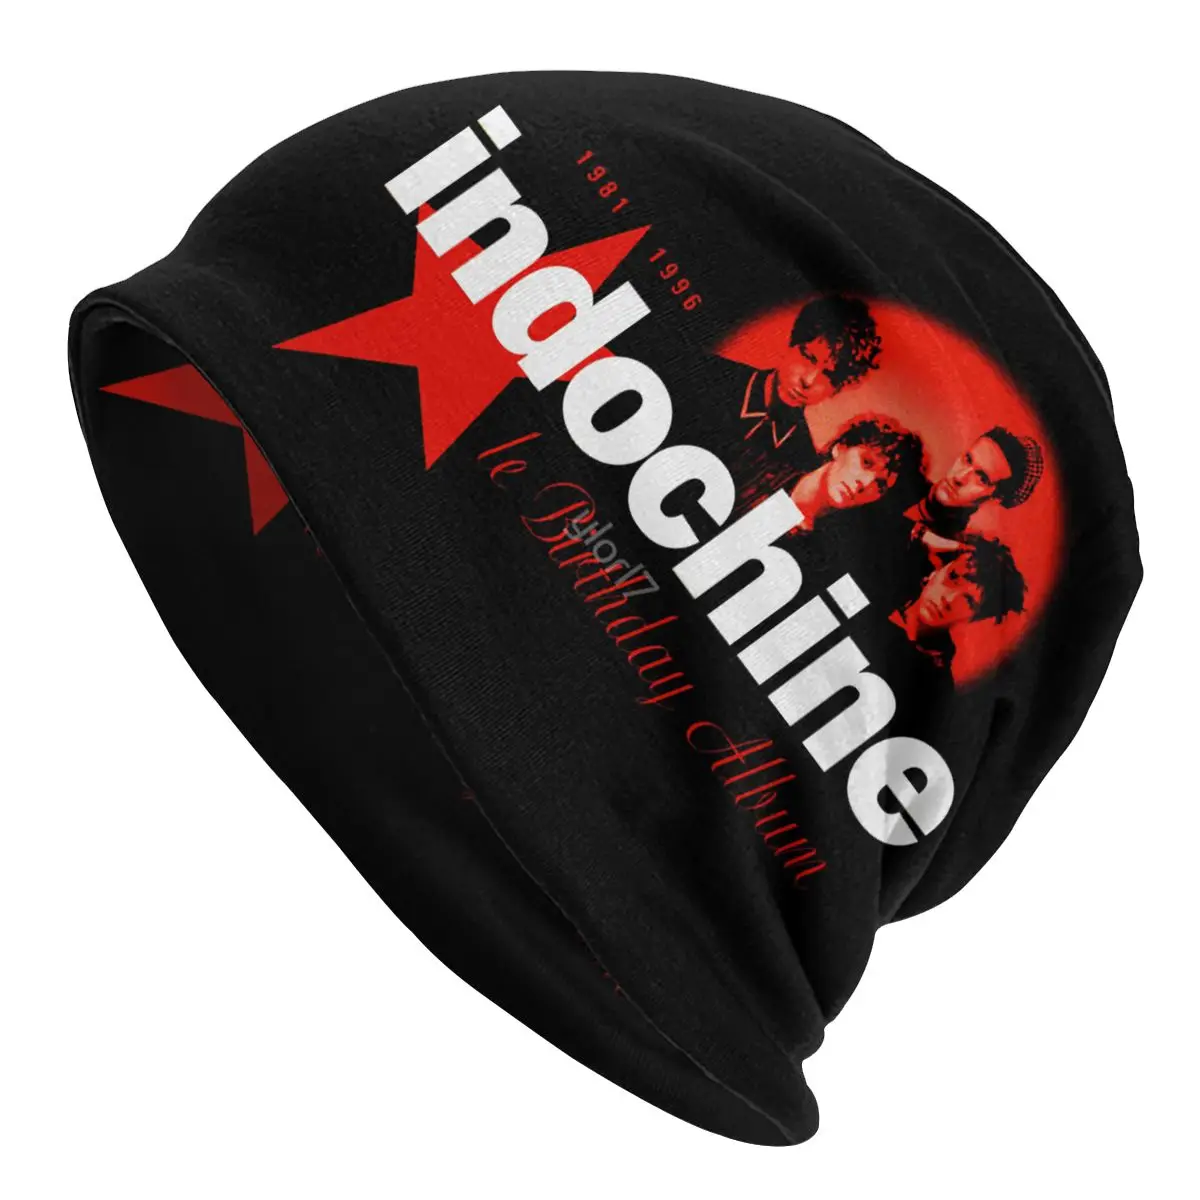 

Bonnet Hats hip hop Adult Men's Knit Hat Indochine Le Birthday Album hats Cool Graphic Unisex R145 Skullies Beanies Caps